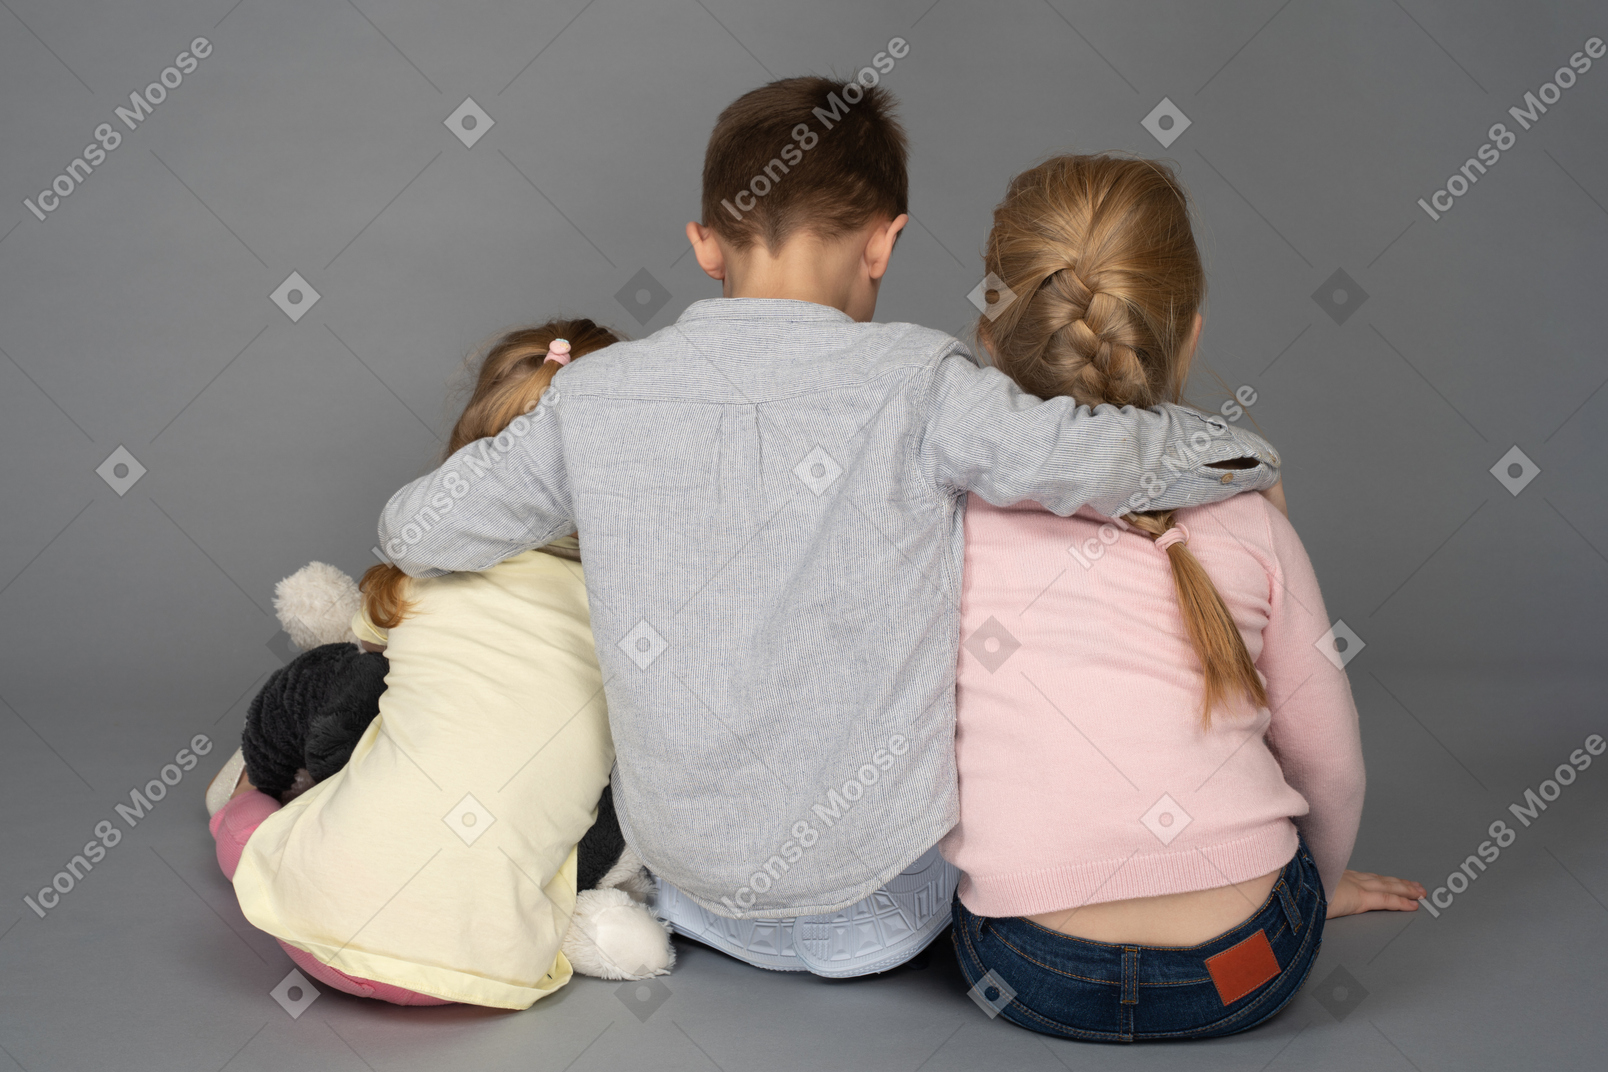 Menino abraçando duas meninas de volta para a câmera